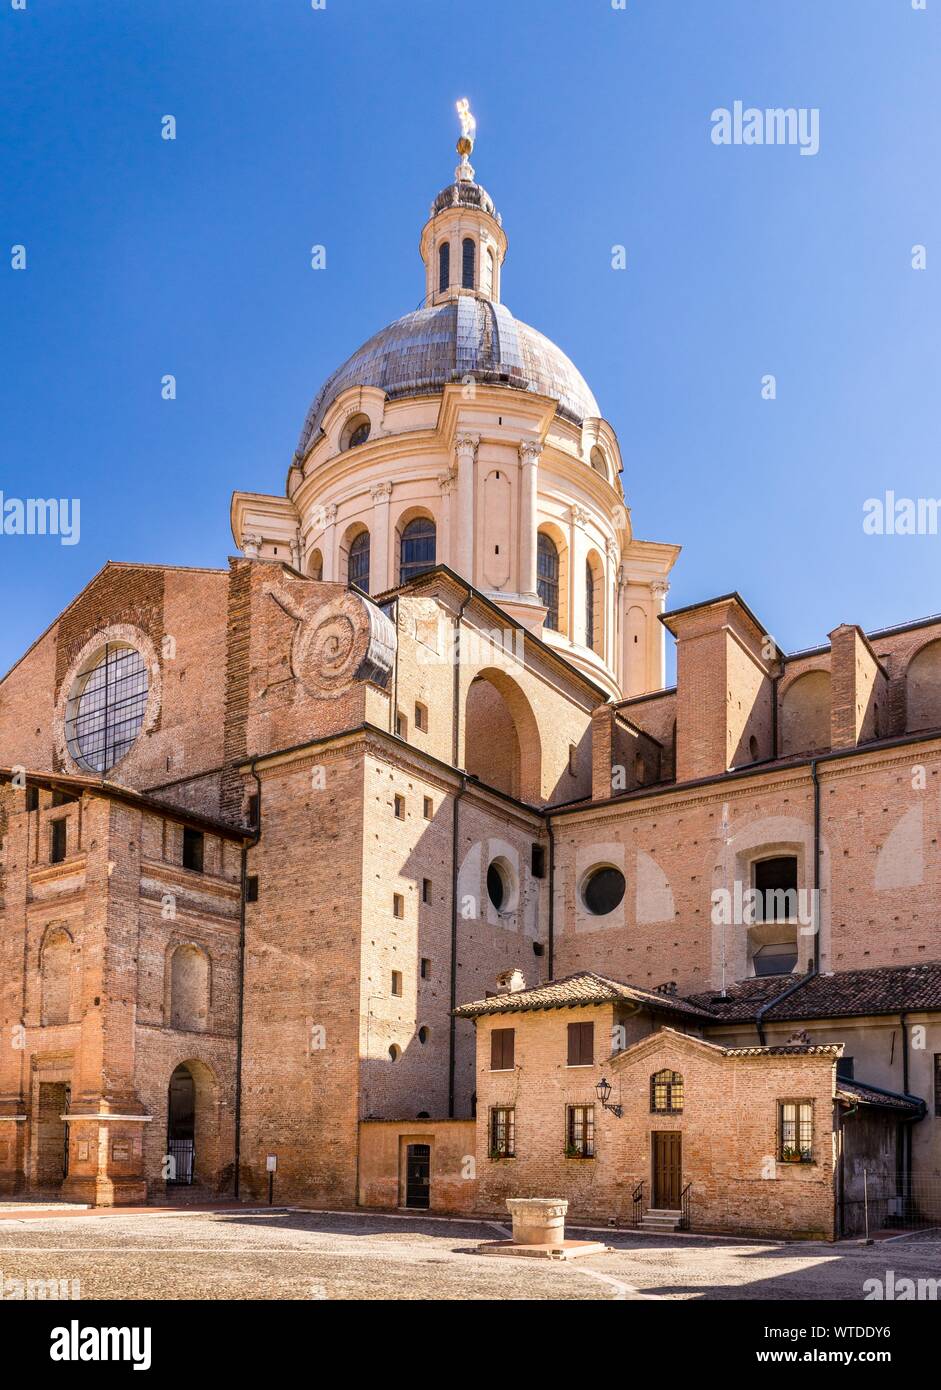 Basilica Sant'Andrea in Piazza Leon Battista Alberti, Mantua, Lombardy, Italy Stock Photo